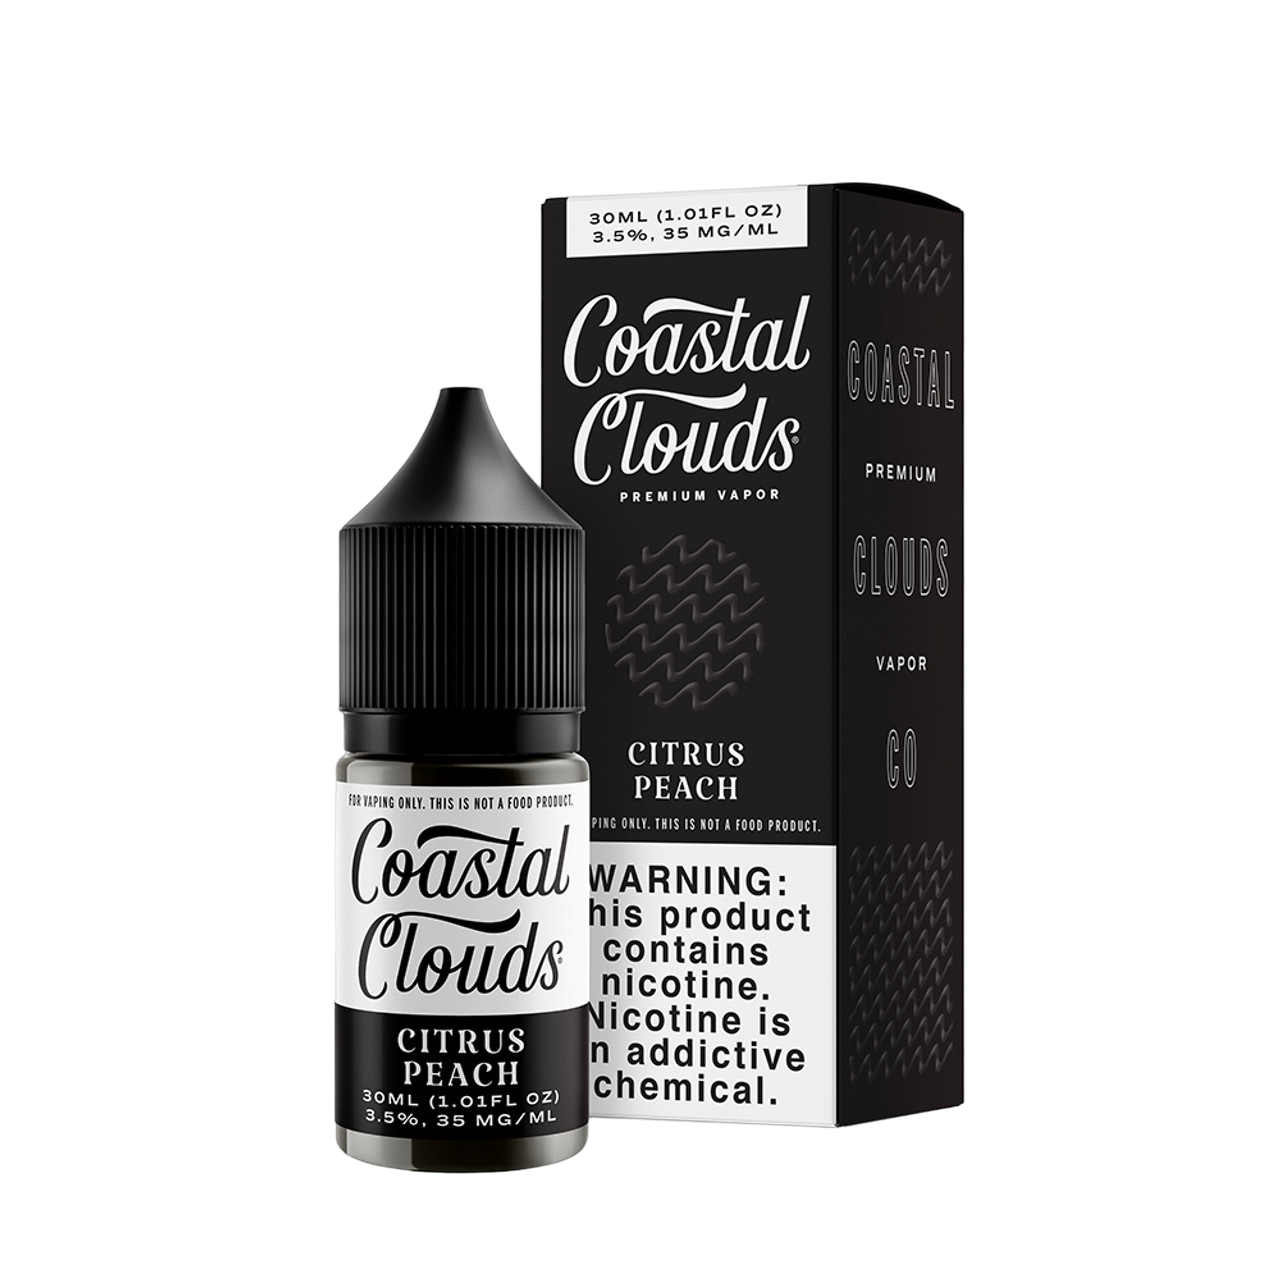 Coastal Clouds Premium Vapor Nicotine Salt E-Liquid 30ML Citrus Peach 